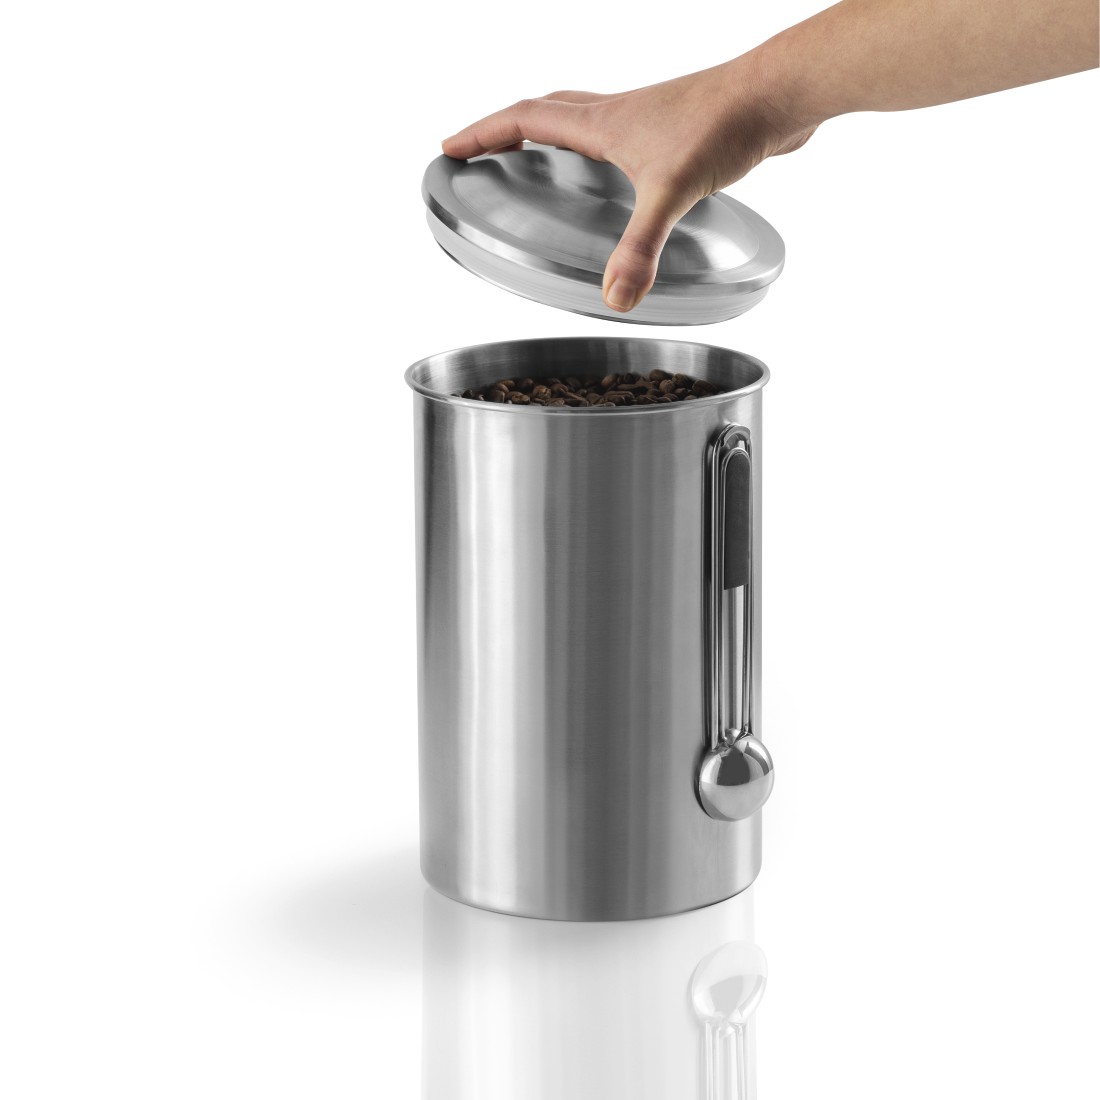 awx3 Druckfähige Anwendung 3 - Xavax, Edelstahldose für 1 kg Kaffeebohnen, mit Löffel, Silber